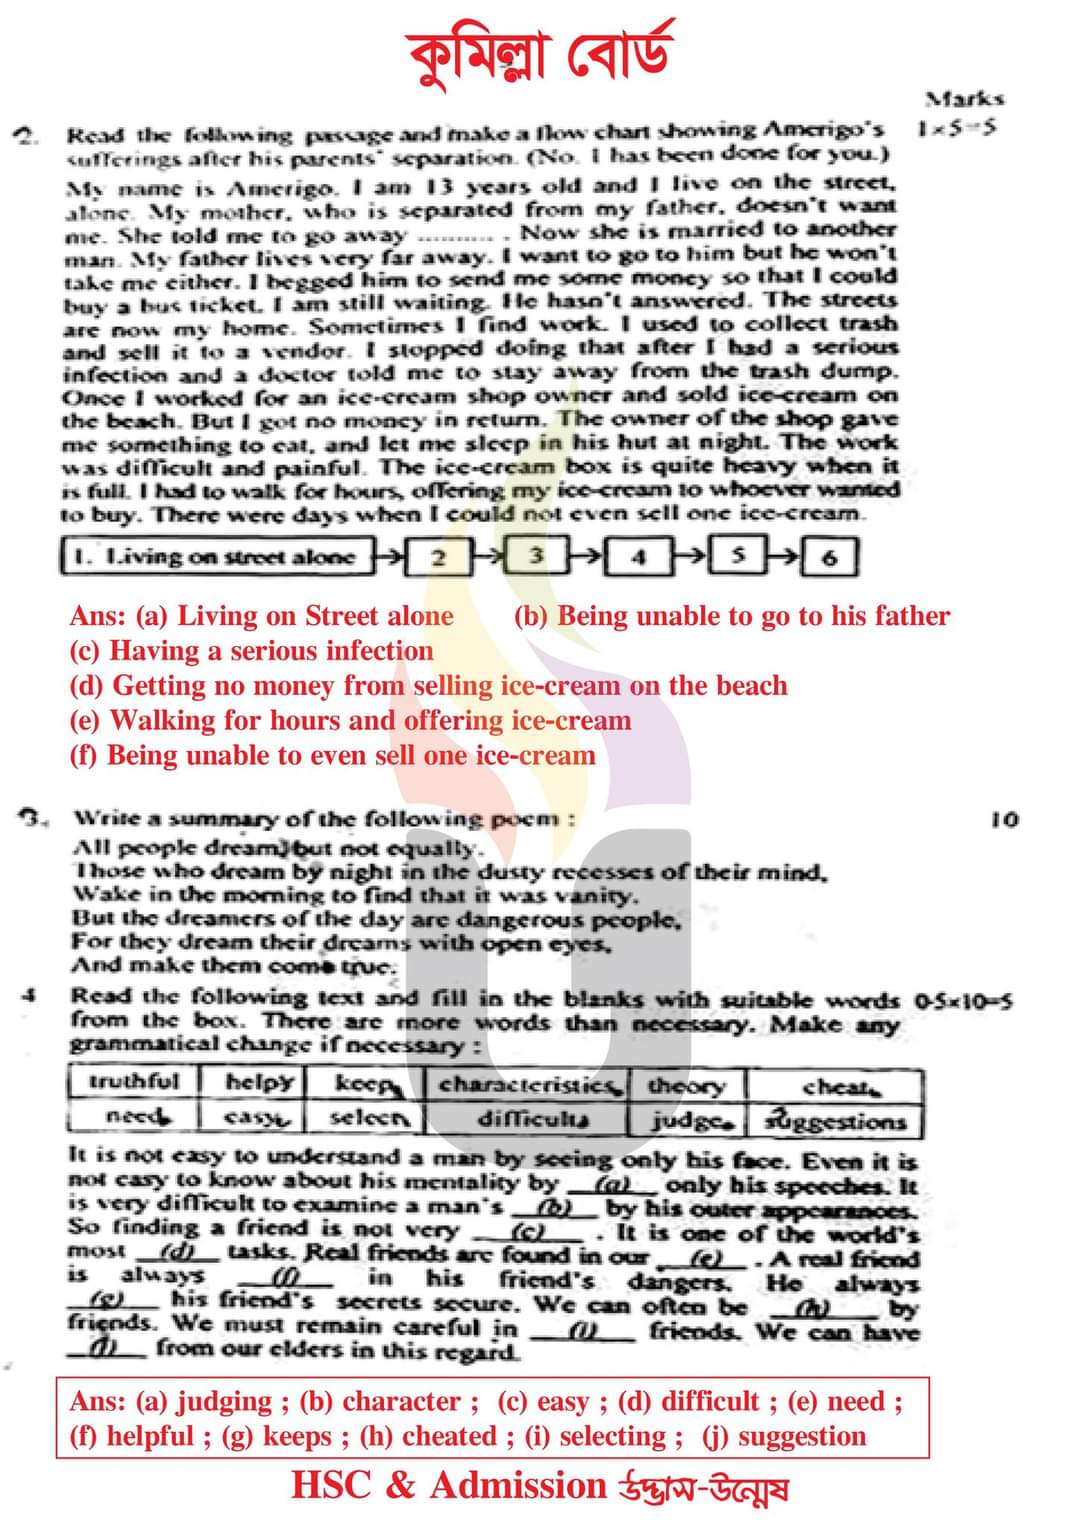 কুমিল্লা বোর্ড এইচএসসি ইংরেজি ১ম পএ বহুনির্বাচনি প্রশ্ন সমাধান ২০২৩ | এইচএসসি ইংরেজি ১ম পএ প্রশ্ন সমাধান ২০২৩ | Comilla  broad hsc English 1st paper exam Mcq Solution 2023